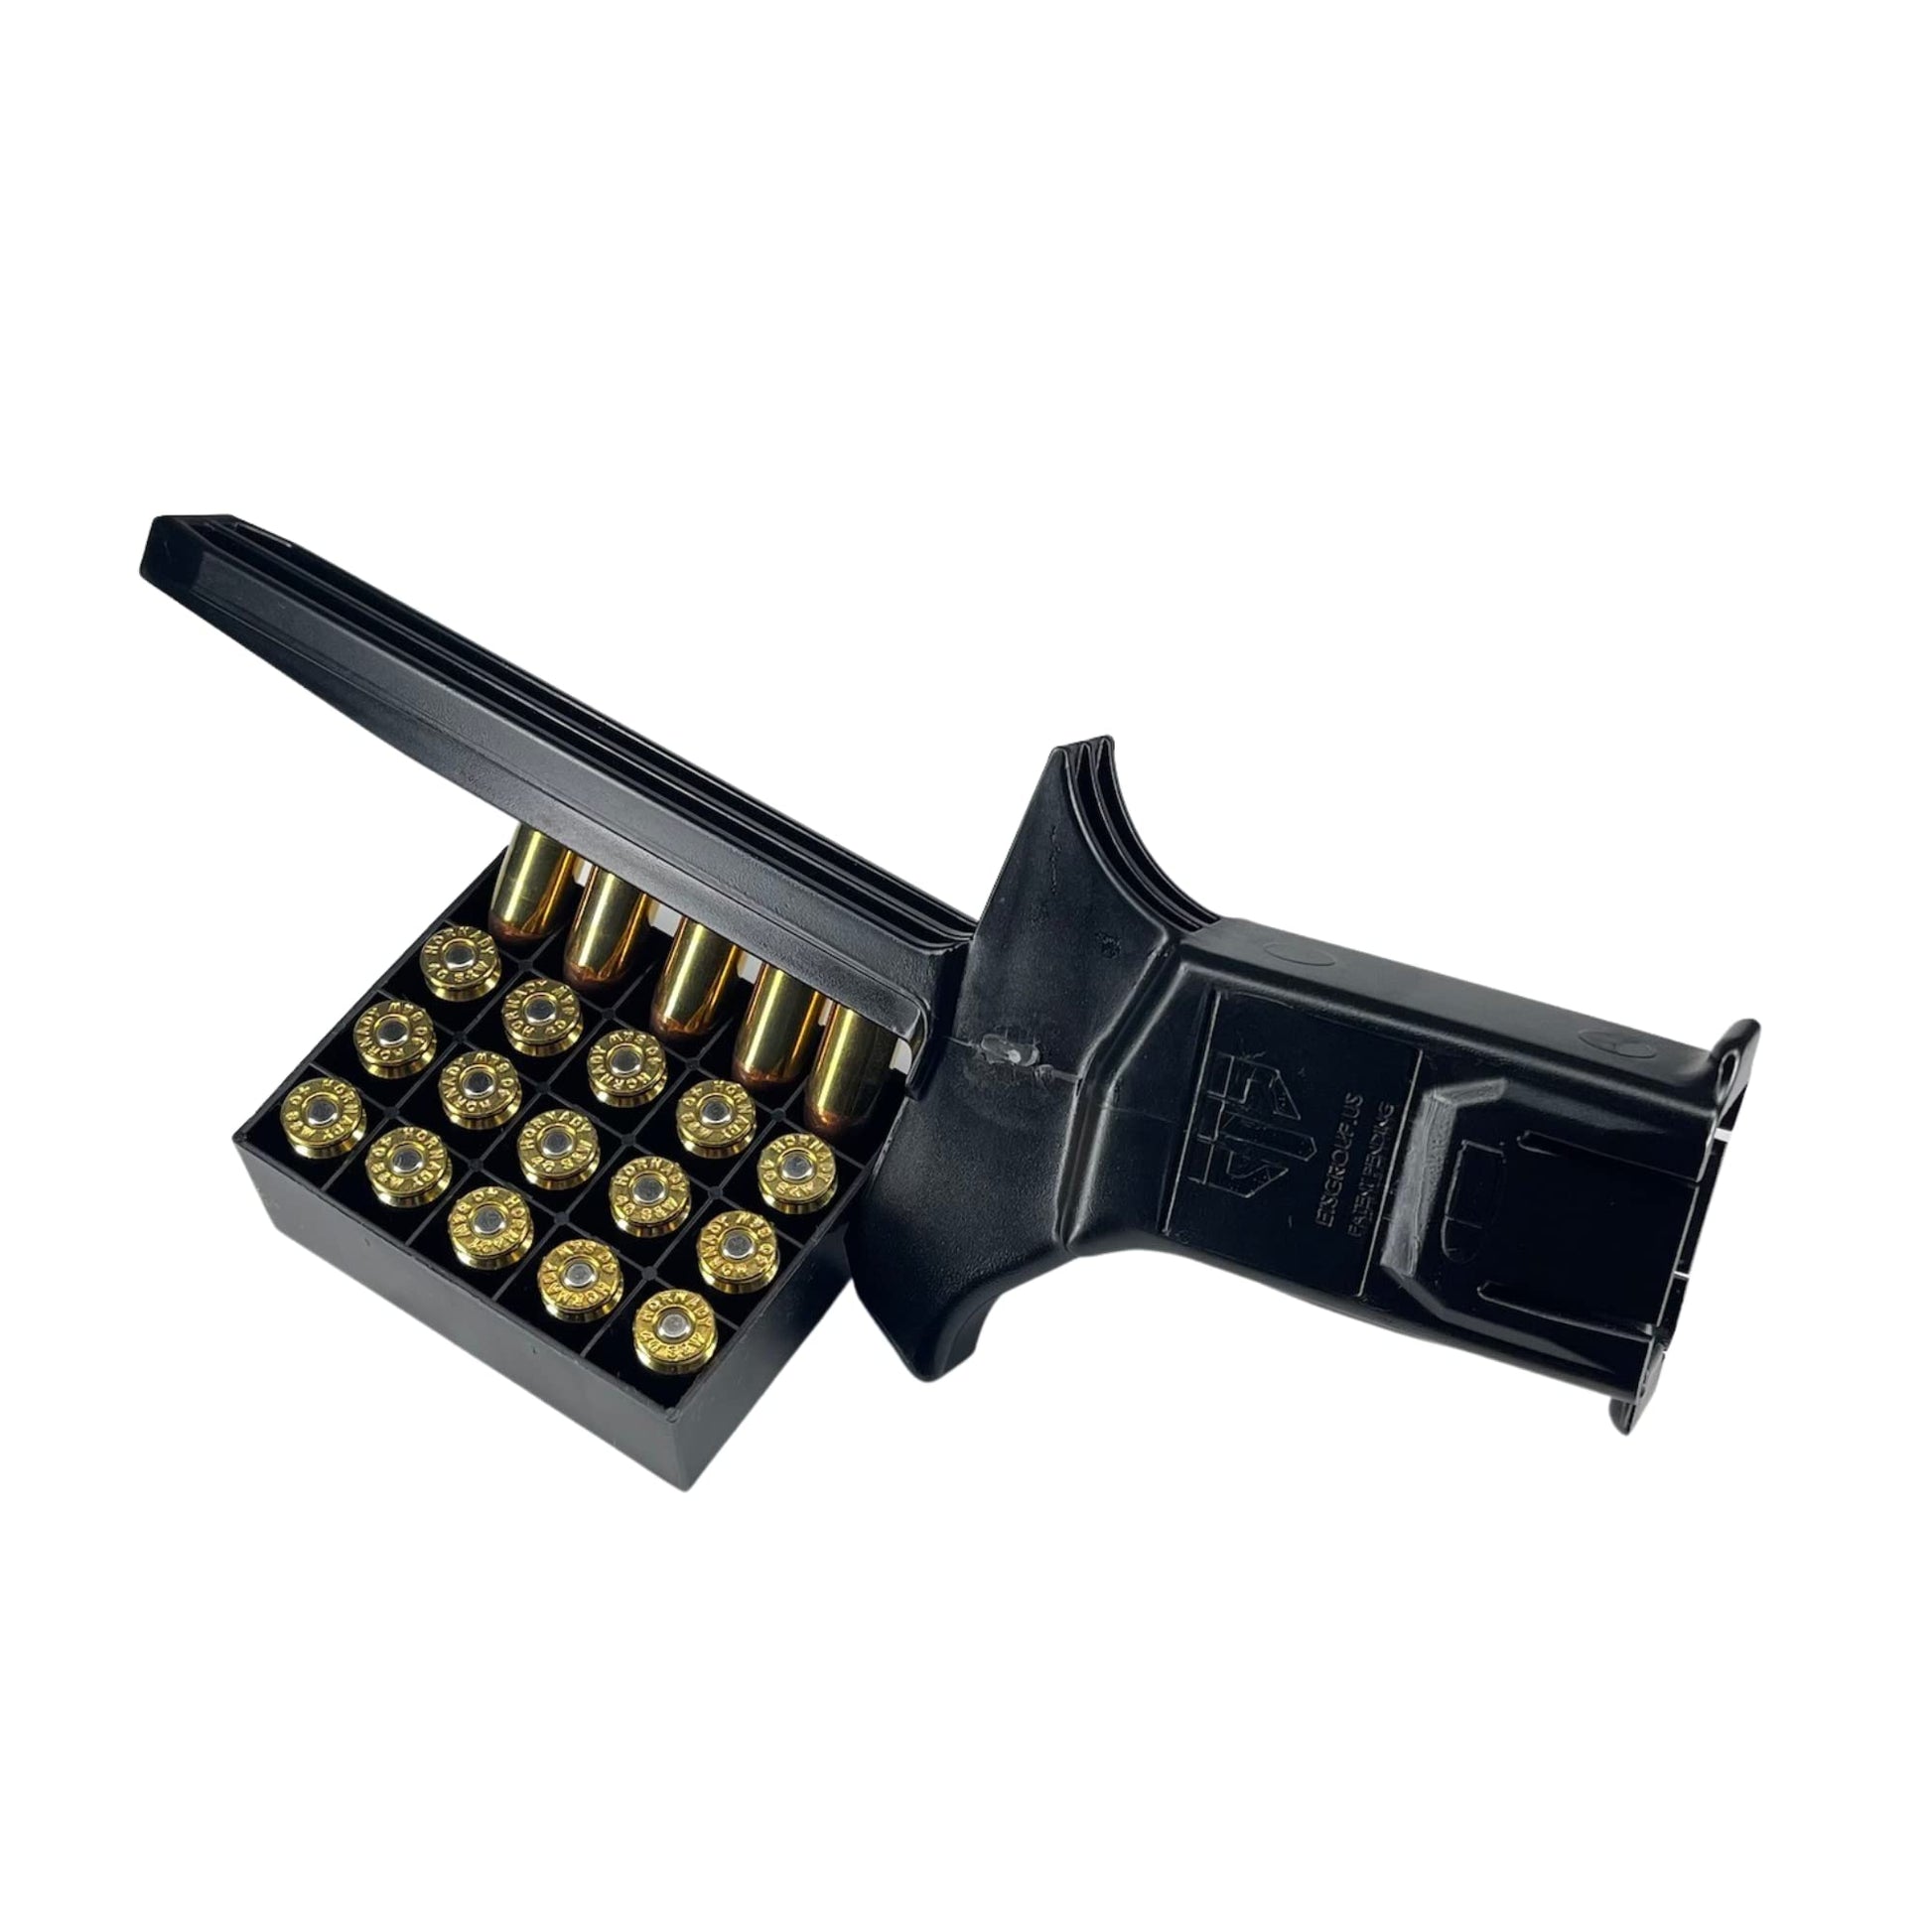 ETS Speed Loader Universal Pistol Handgun Magazine Reloader 45 Ammo - Opticdeals